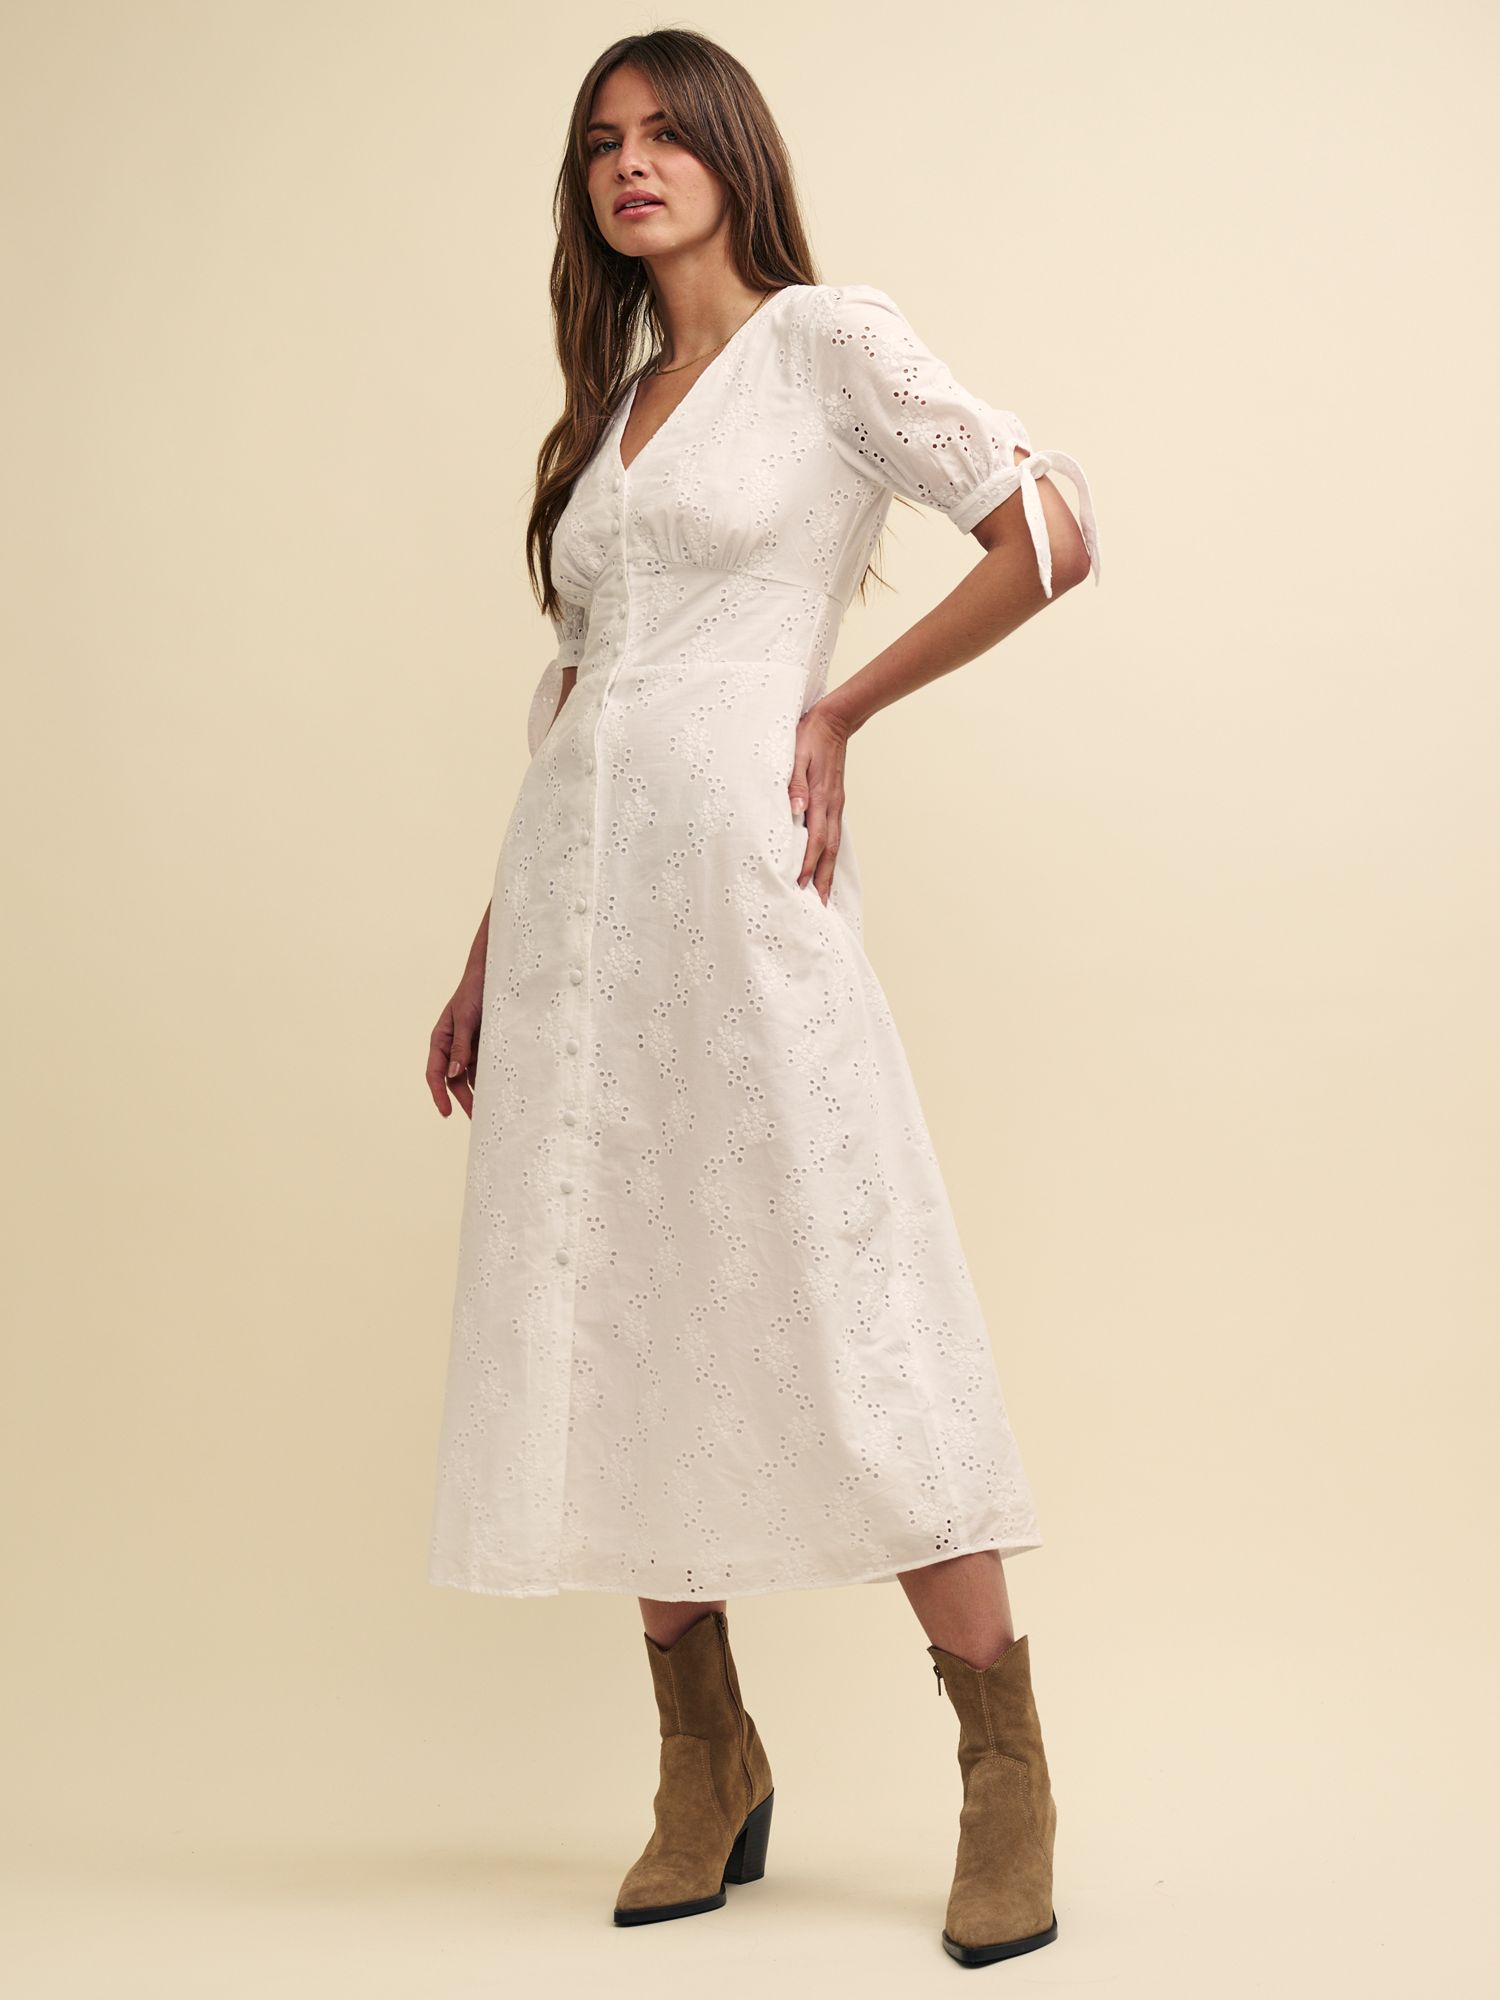 Nobody's Child Alexis Organic Cotton Midi Dress, White, 6